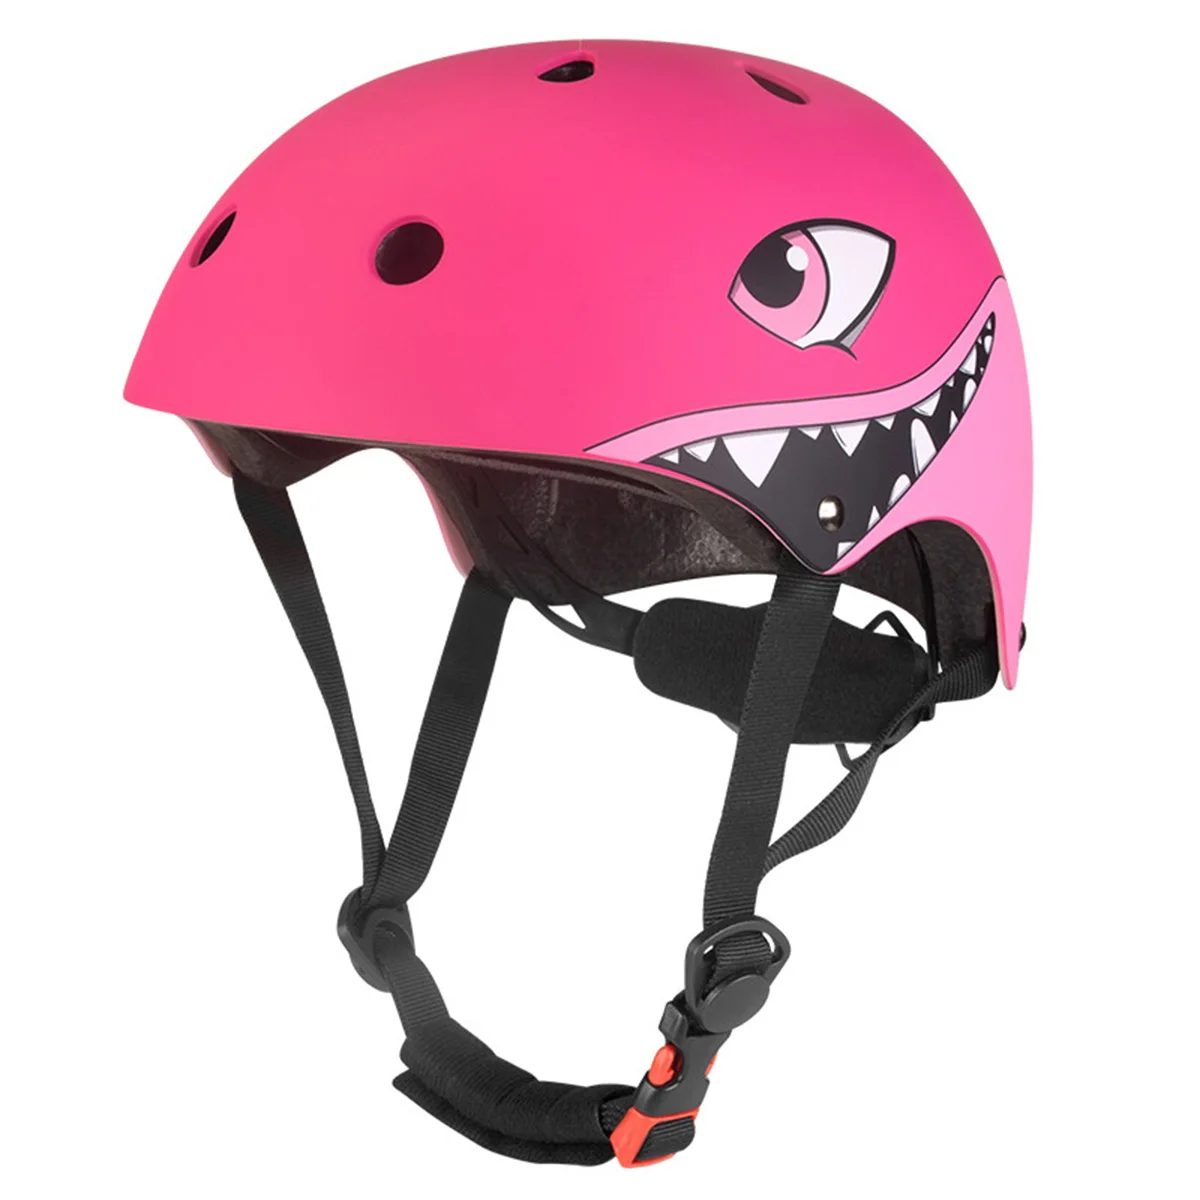 luz LED Trasera Casco de Animales en 3D para Patinaje Scooter Bicicleta Niñas Regalos Creamon Casco de Ciclismo de Seguridad para Dinosaurios de Dibujos Animados para niños